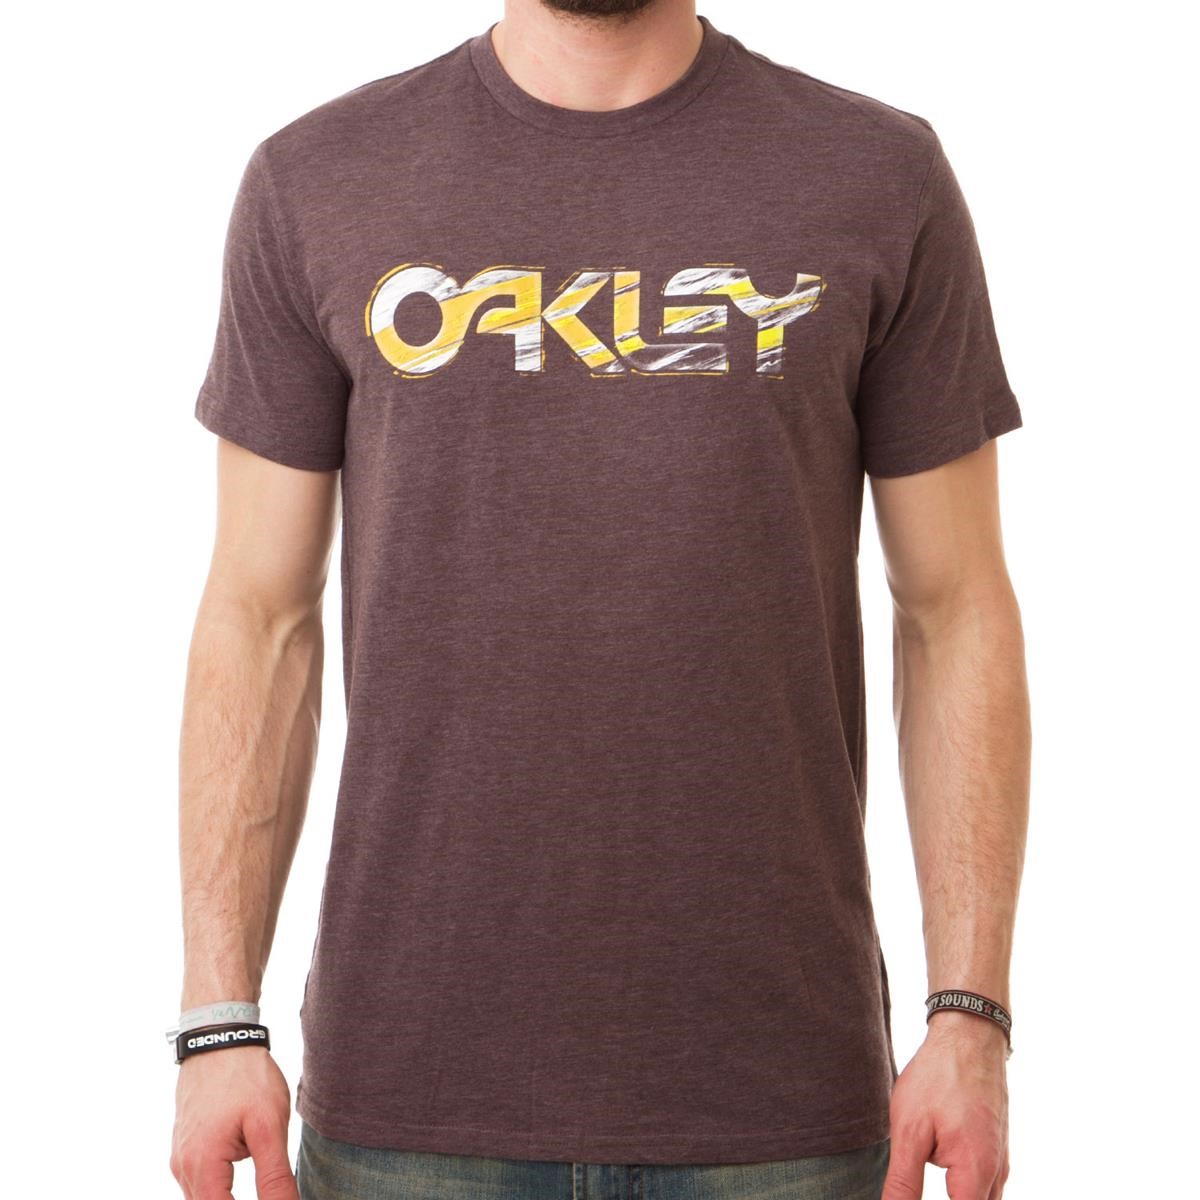 Freizeit/Streetwear Bekleidung-T-Shirts/Polos - Oakley T-Shirt Blast Dark Sienna